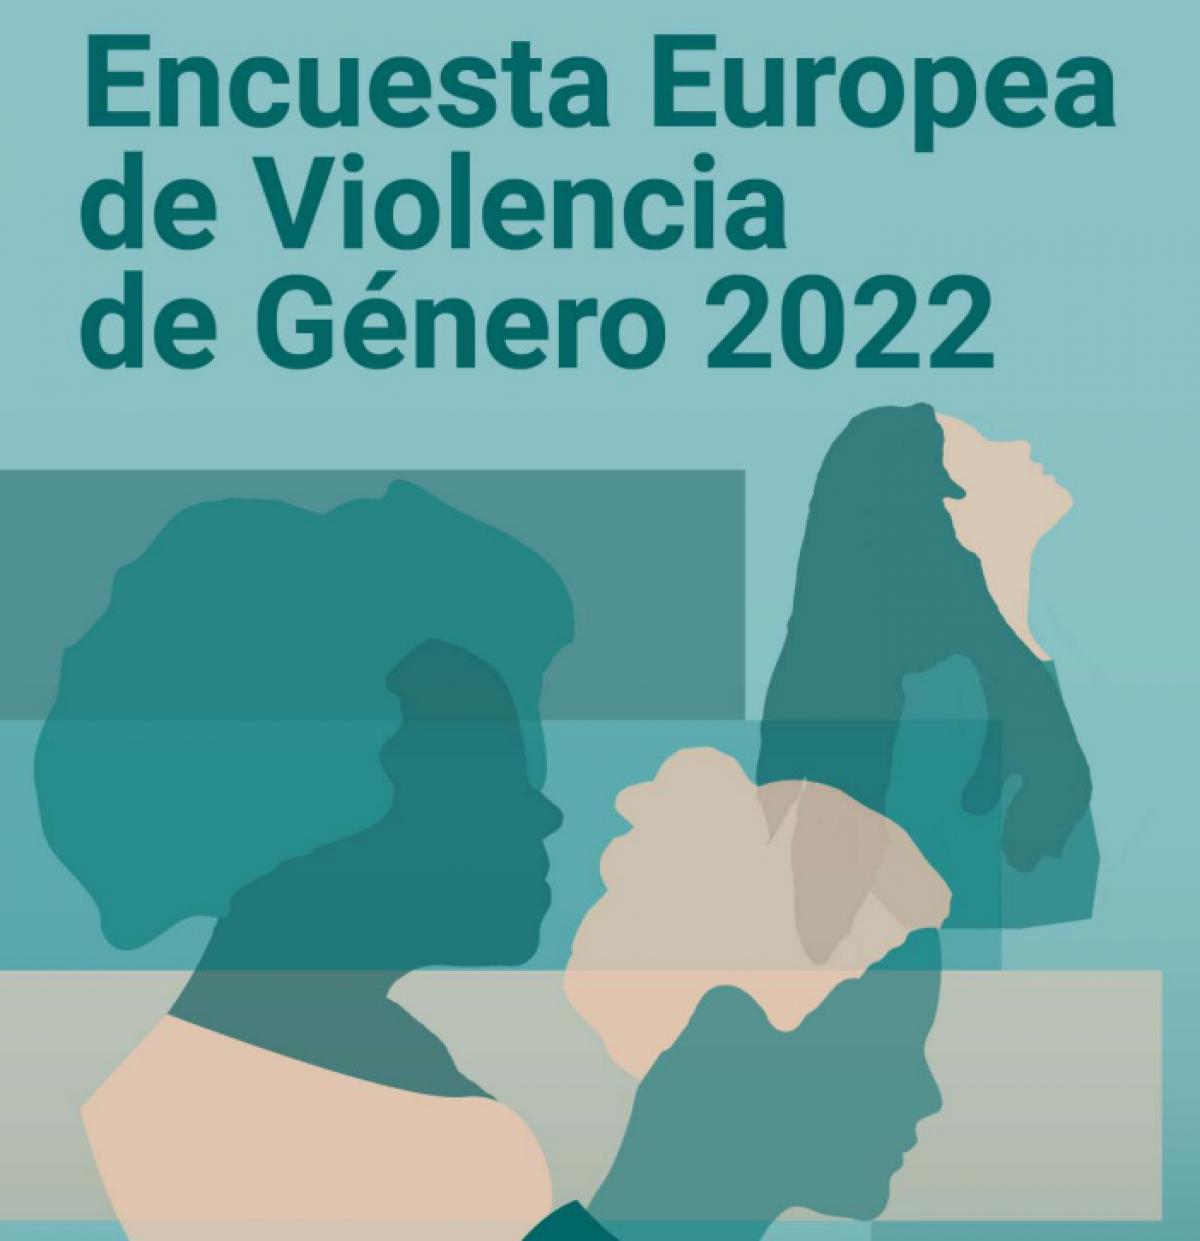 Portada de la encuesta Europea de Violencia de gnero